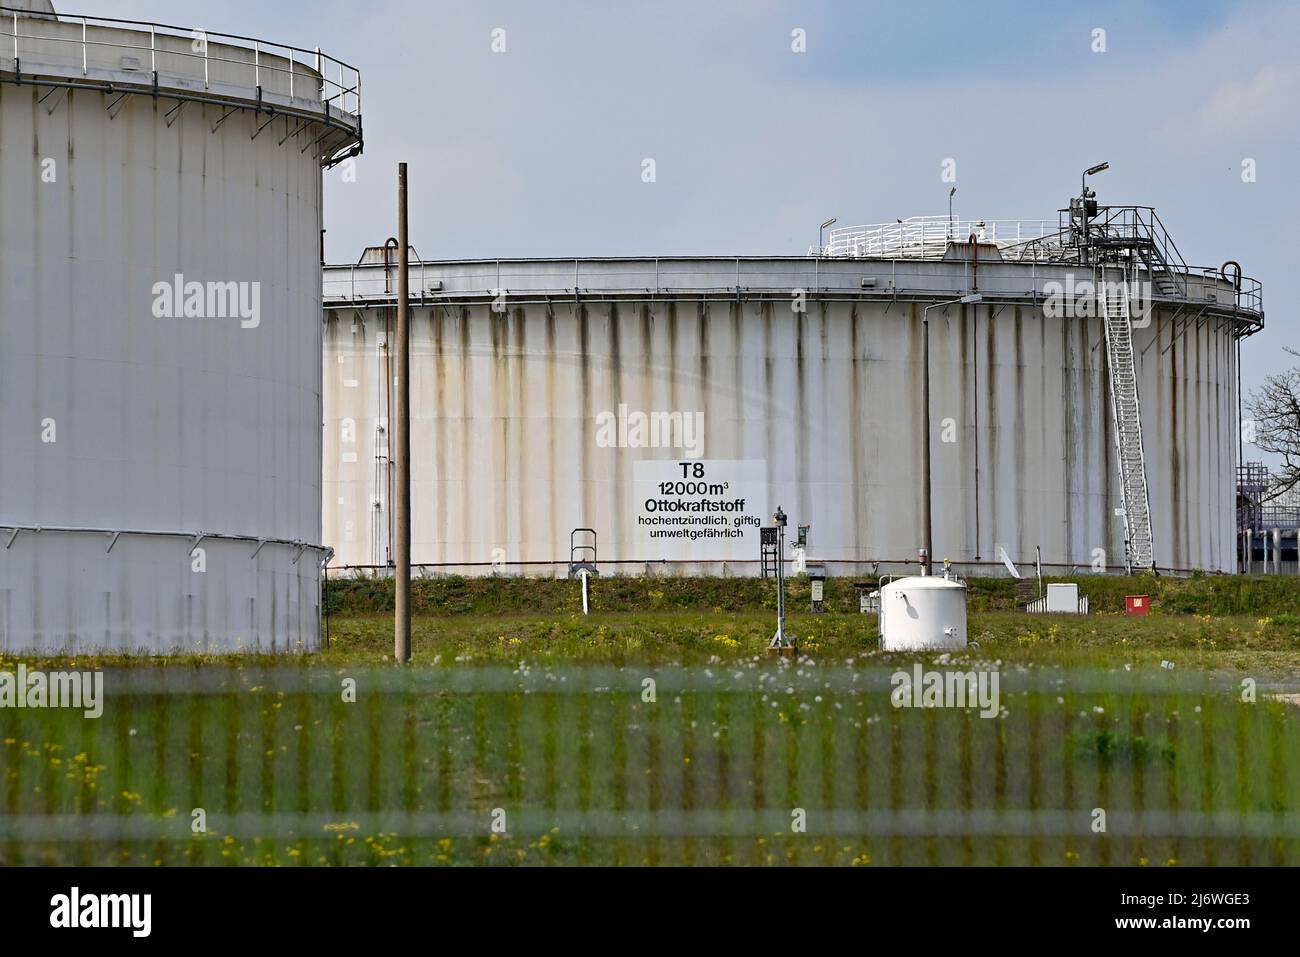 04 mai 2022, Brandebourg, Seefeld: Immense stand de conteneurs-citernes sur le site de PCK et d'elf Tanklagerbetrieb Seefeld GbR. Le pétrole brut de Russie arrive à la raffinerie de pétrole PCK à Schwedt via le pipeline « Friendship ». L'année dernière, le groupe énergétique russe Rosneft a pris en charge une grande partie de la raffinerie de pétrole PCK à Schwedt. Rosneft est le plus grand producteur de pétrole de Russie. Selon ses propres informations, la raffinerie de la région d'Uckermark traite chaque année 12 millions de tonnes de pétrole brut, ce qui en fait l'un des plus grands sites de transformation d'Allemagne. Photo: Patrick Pleul/dpa Banque D'Images